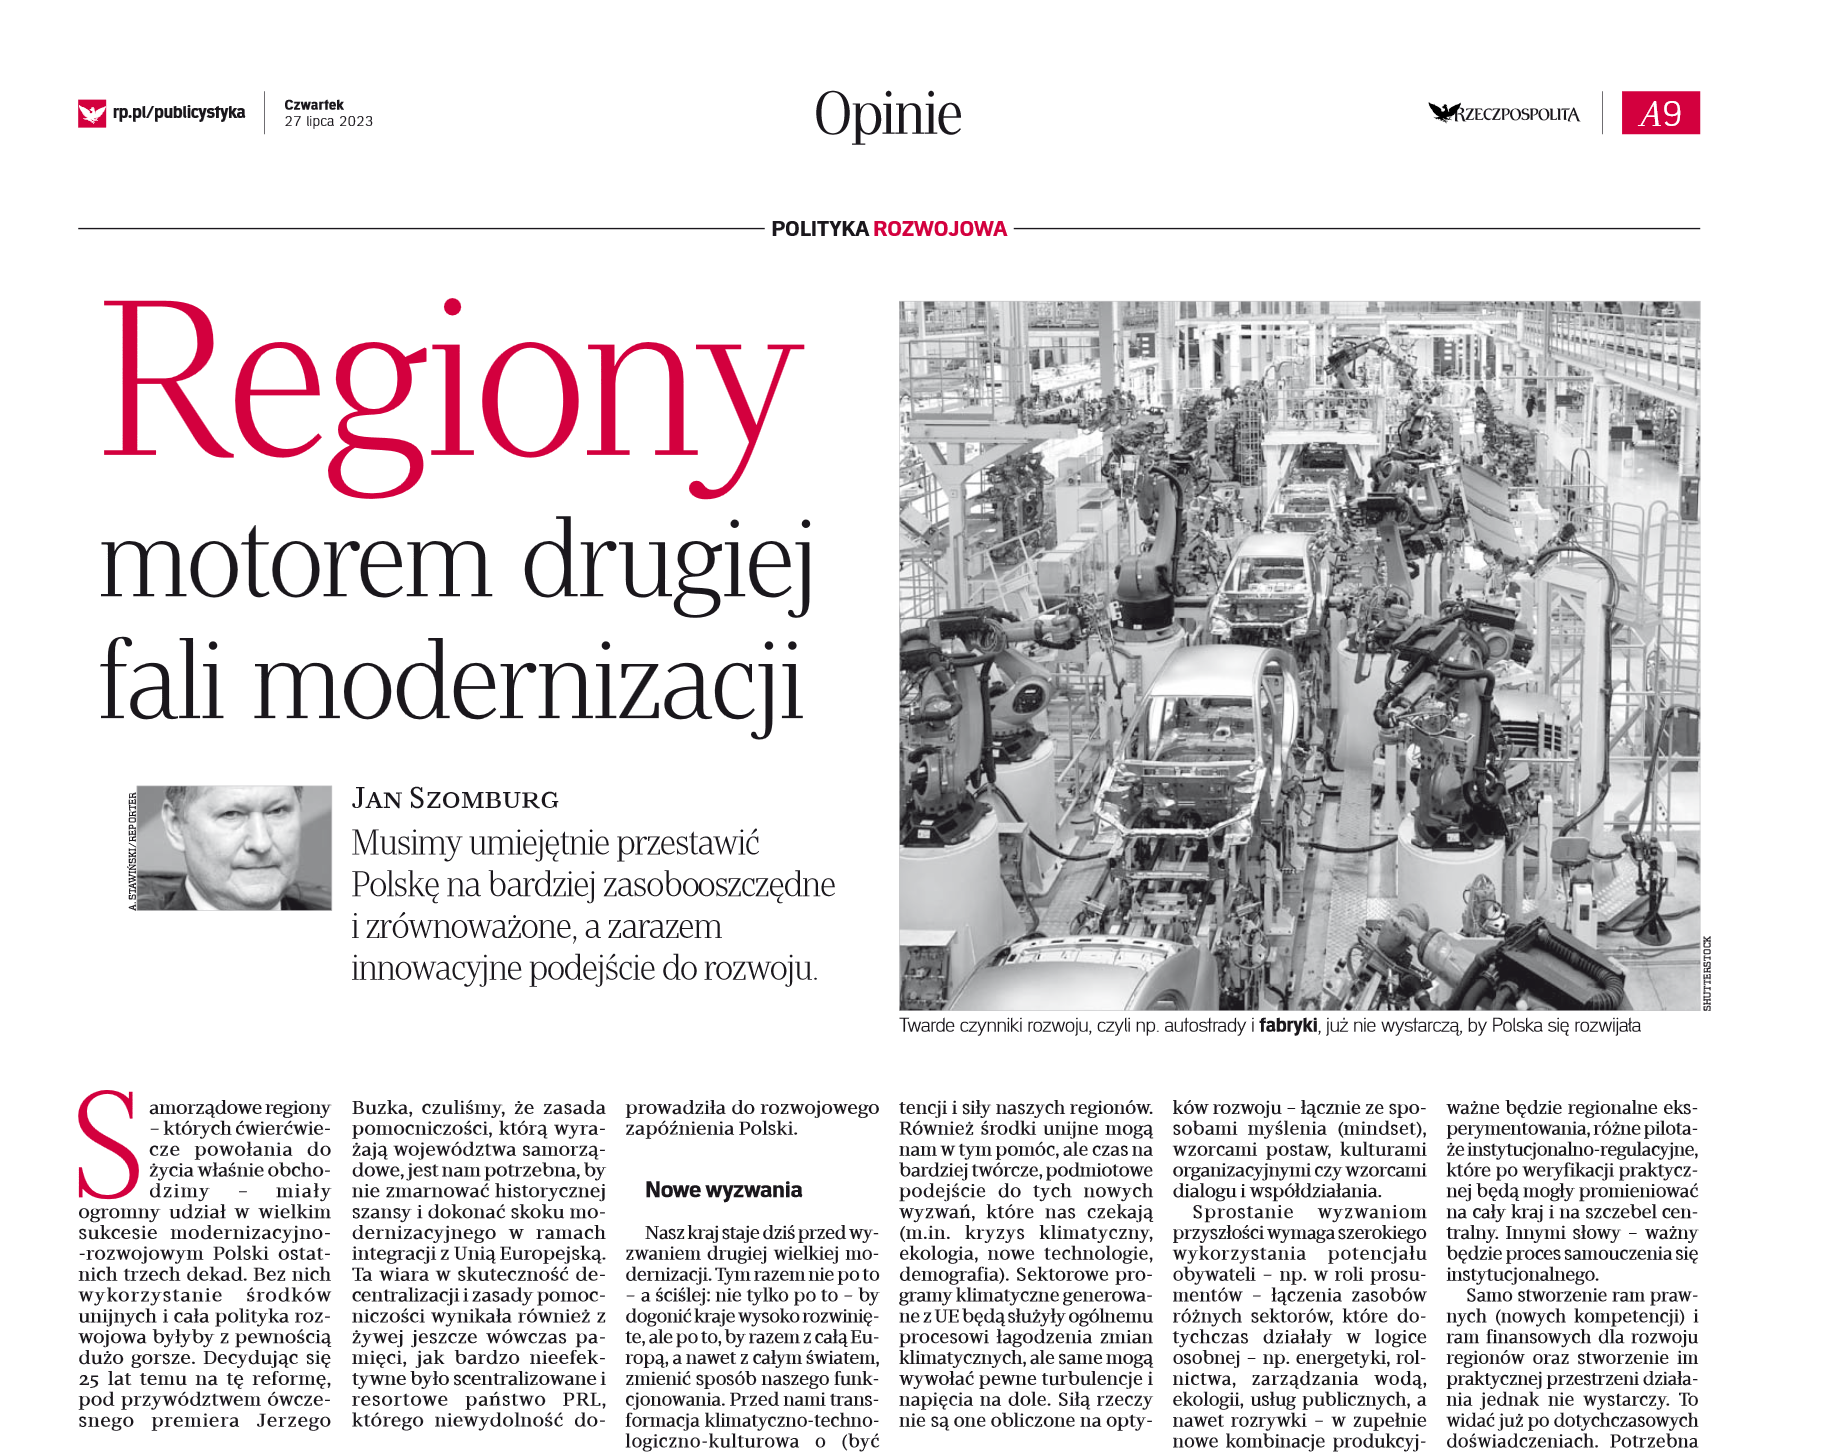 Regiony motorem drugiej fali modernizacji - artykuł w dzienniku Rzeczpospolita